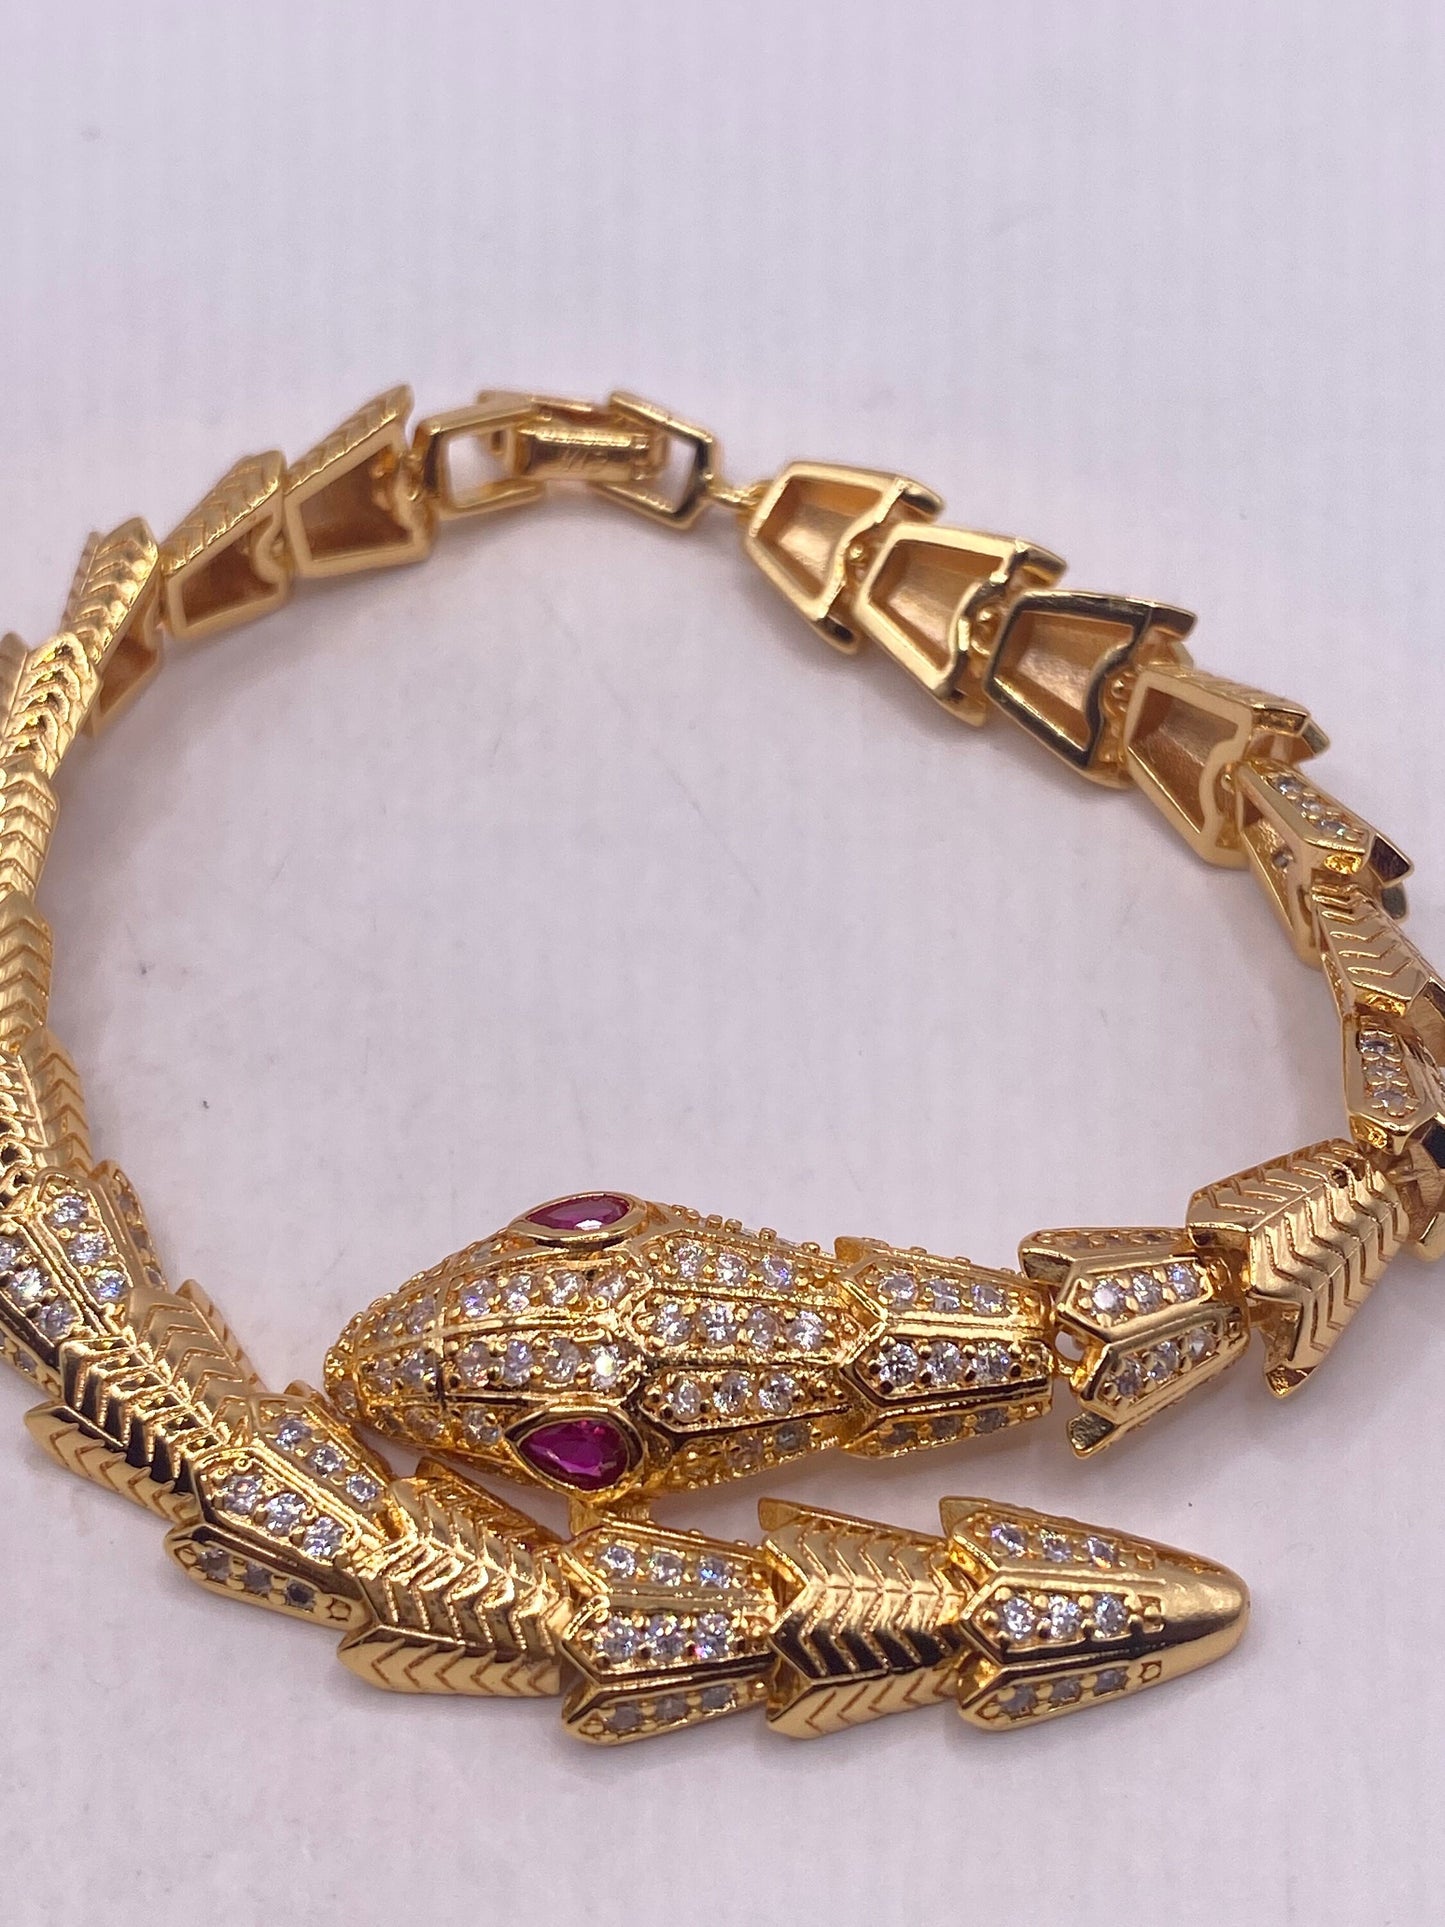 Vintage Snake Bracelet Gold filled Red Ruby Crystal Eyes